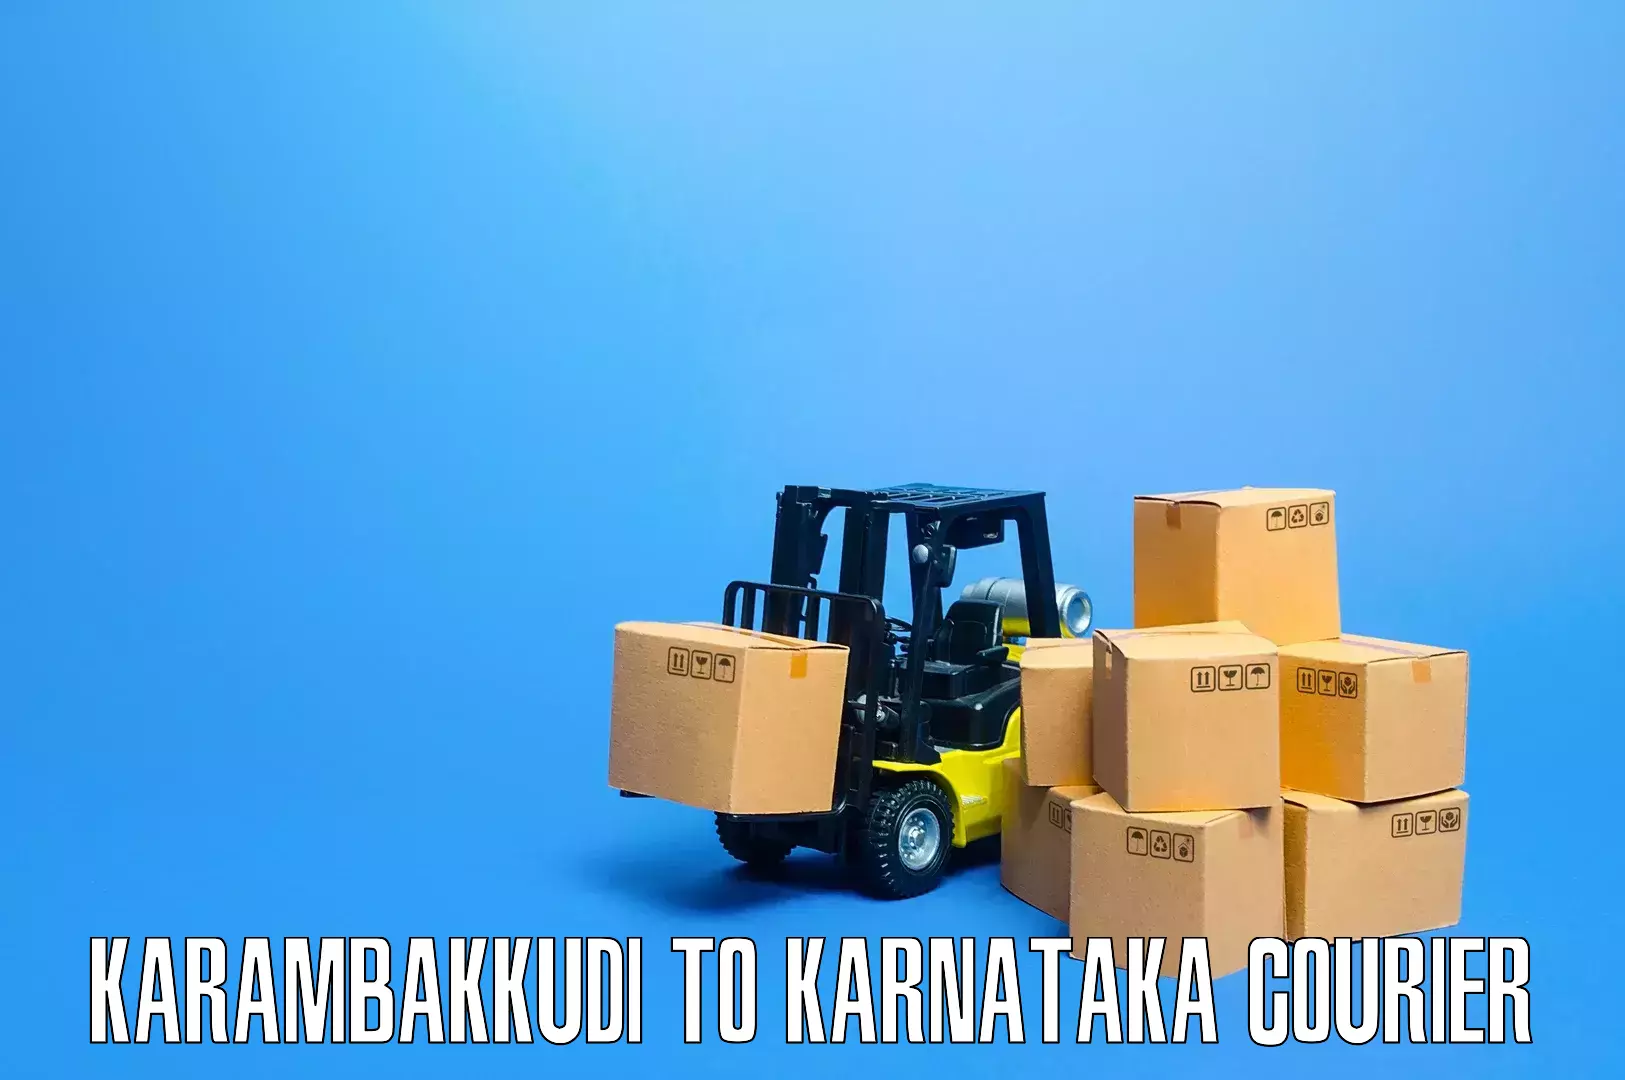 Professional packing and transport Karambakkudi to Ramdurg